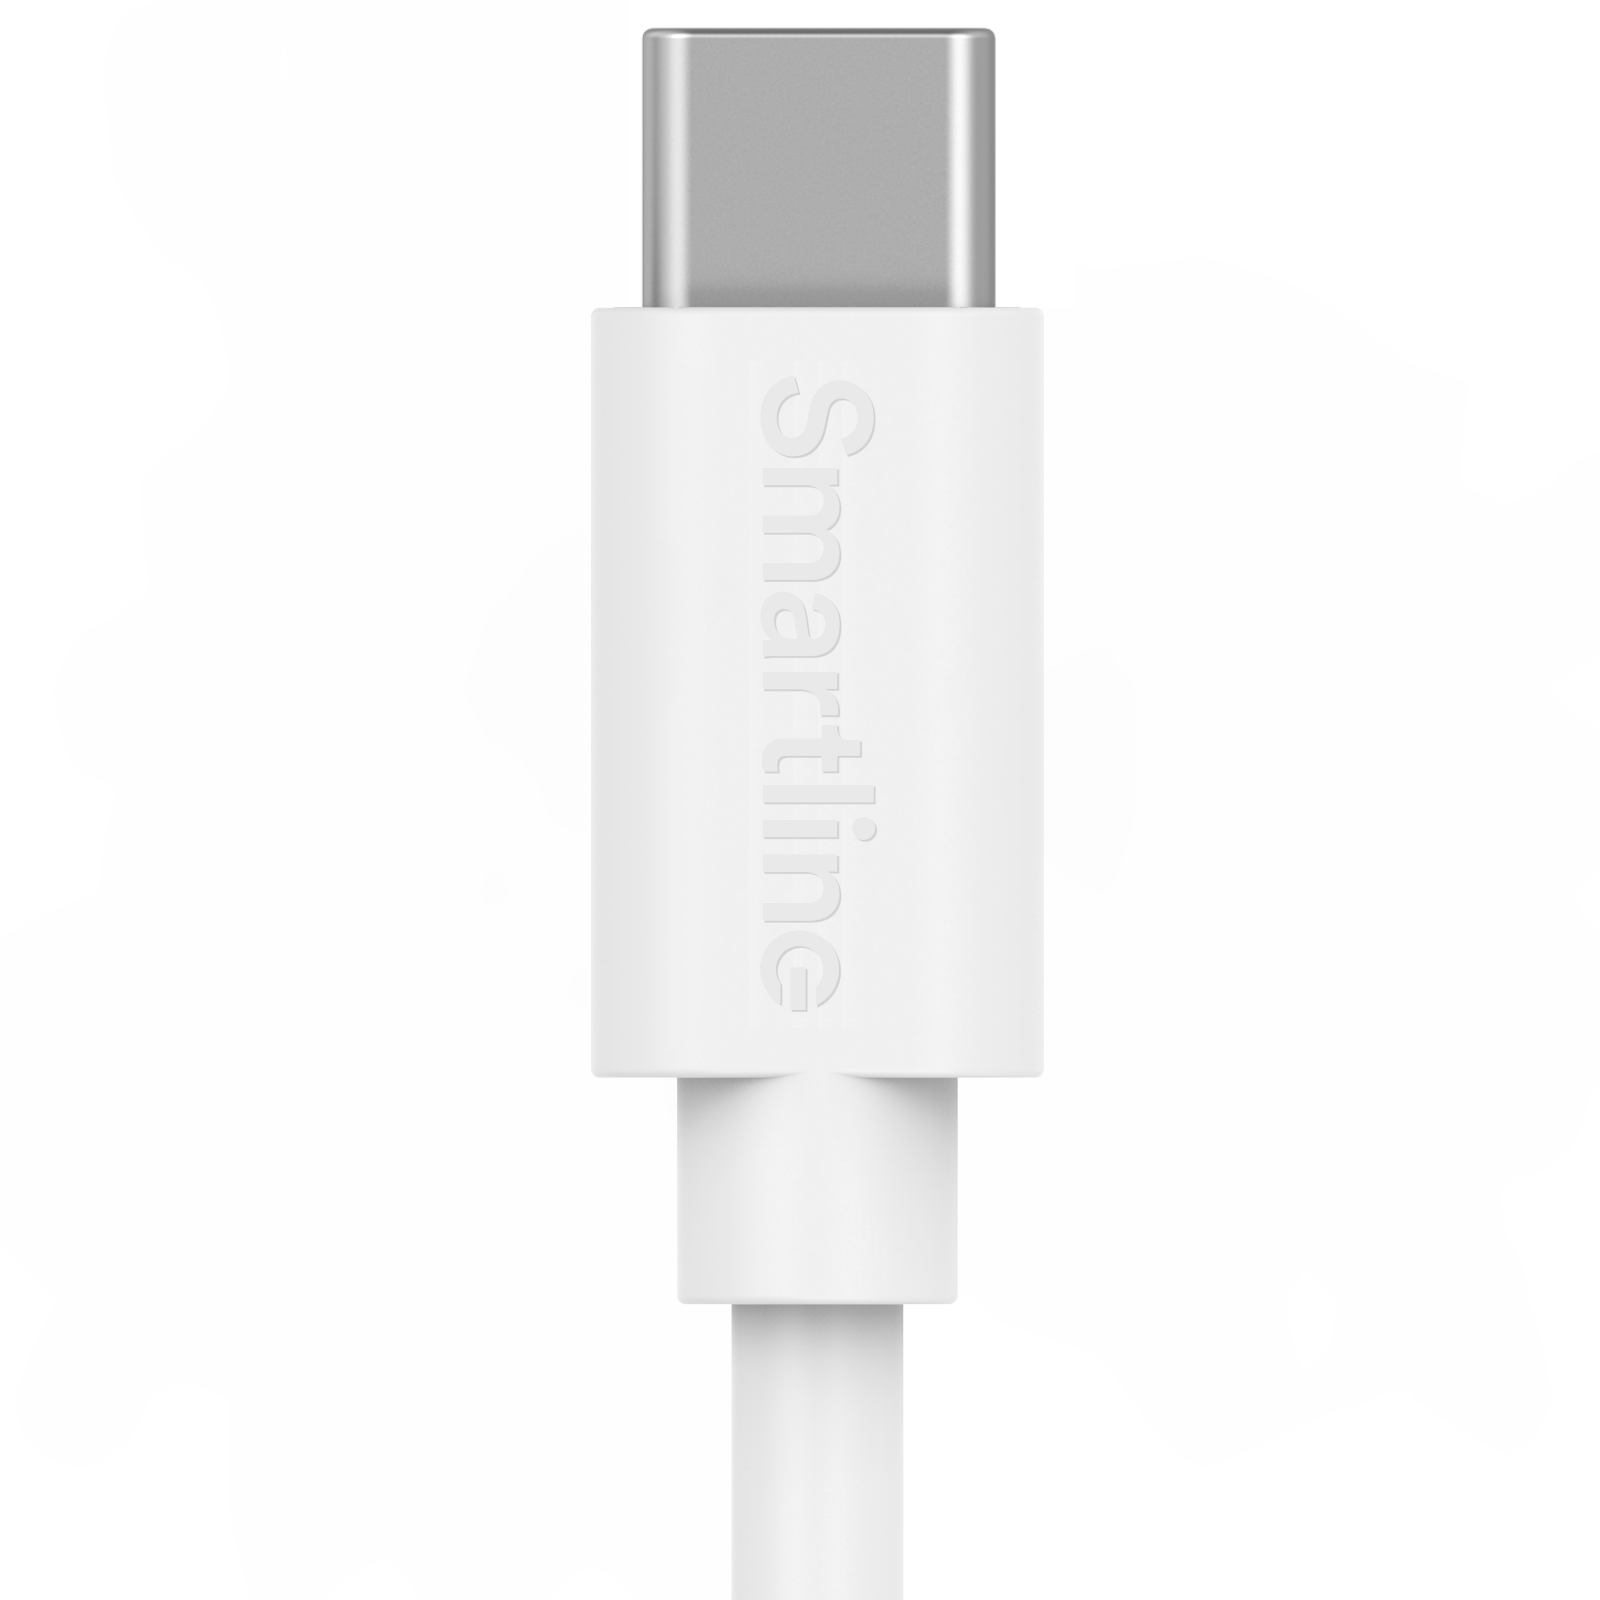 Câble USB-A vers USB-C 1 mètre Blanc